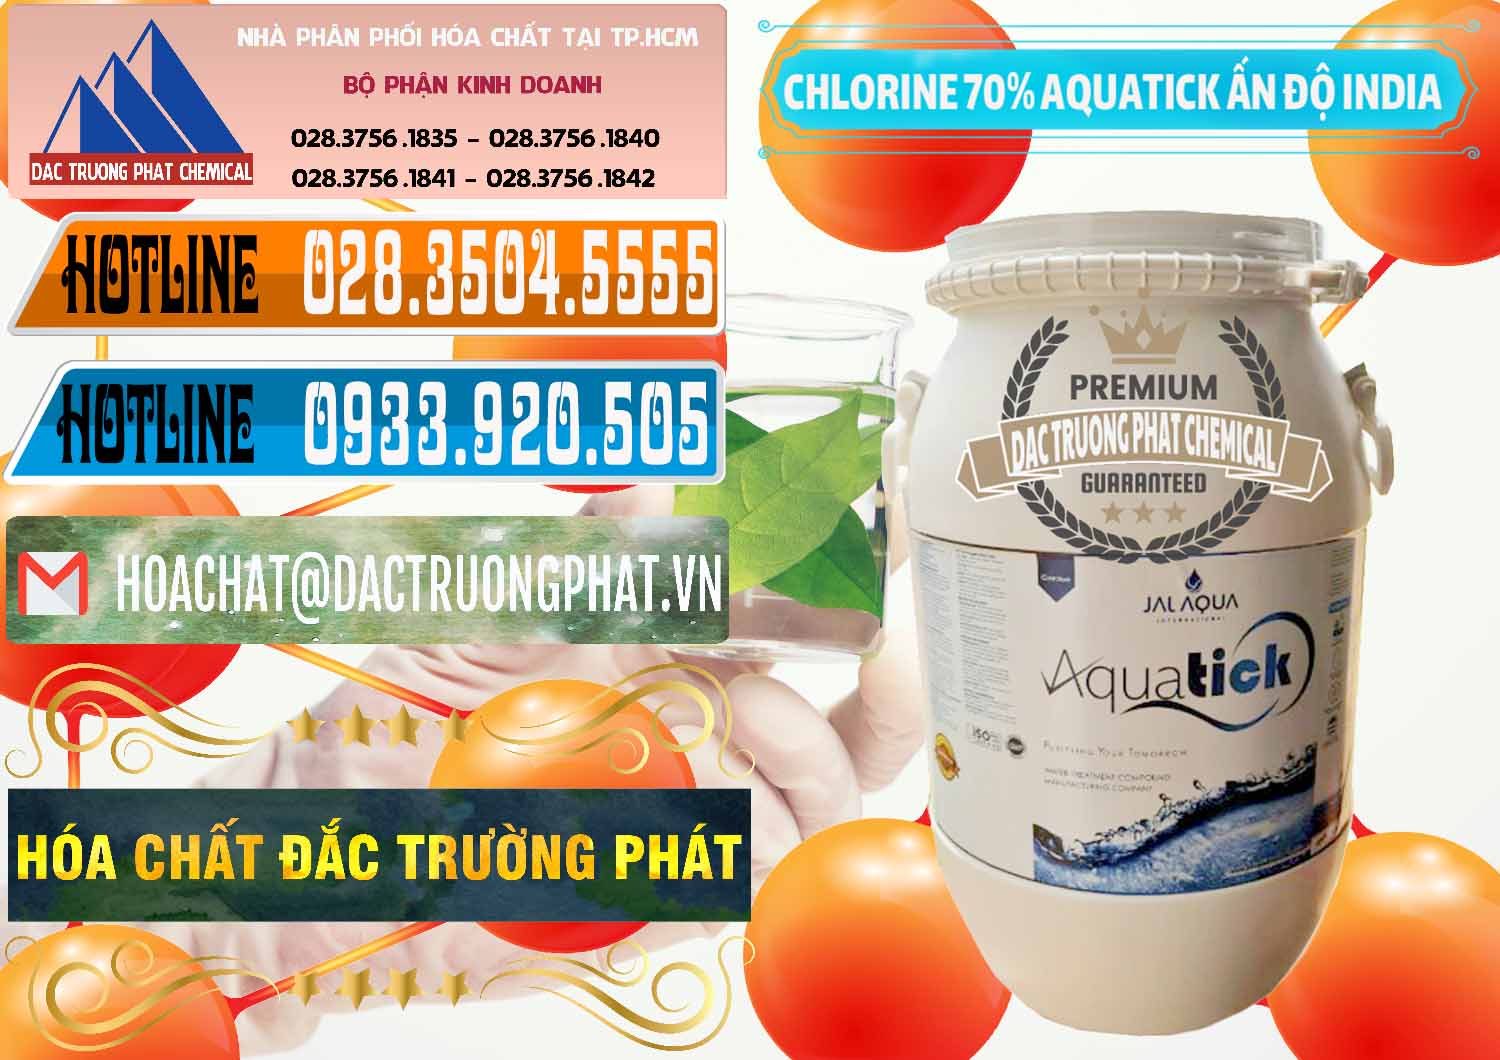 Chuyên phân phối - bán Chlorine – Clorin 70% Aquatick Jal Aqua Ấn Độ India - 0215 - Đơn vị bán - phân phối hóa chất tại TP.HCM - stmp.net